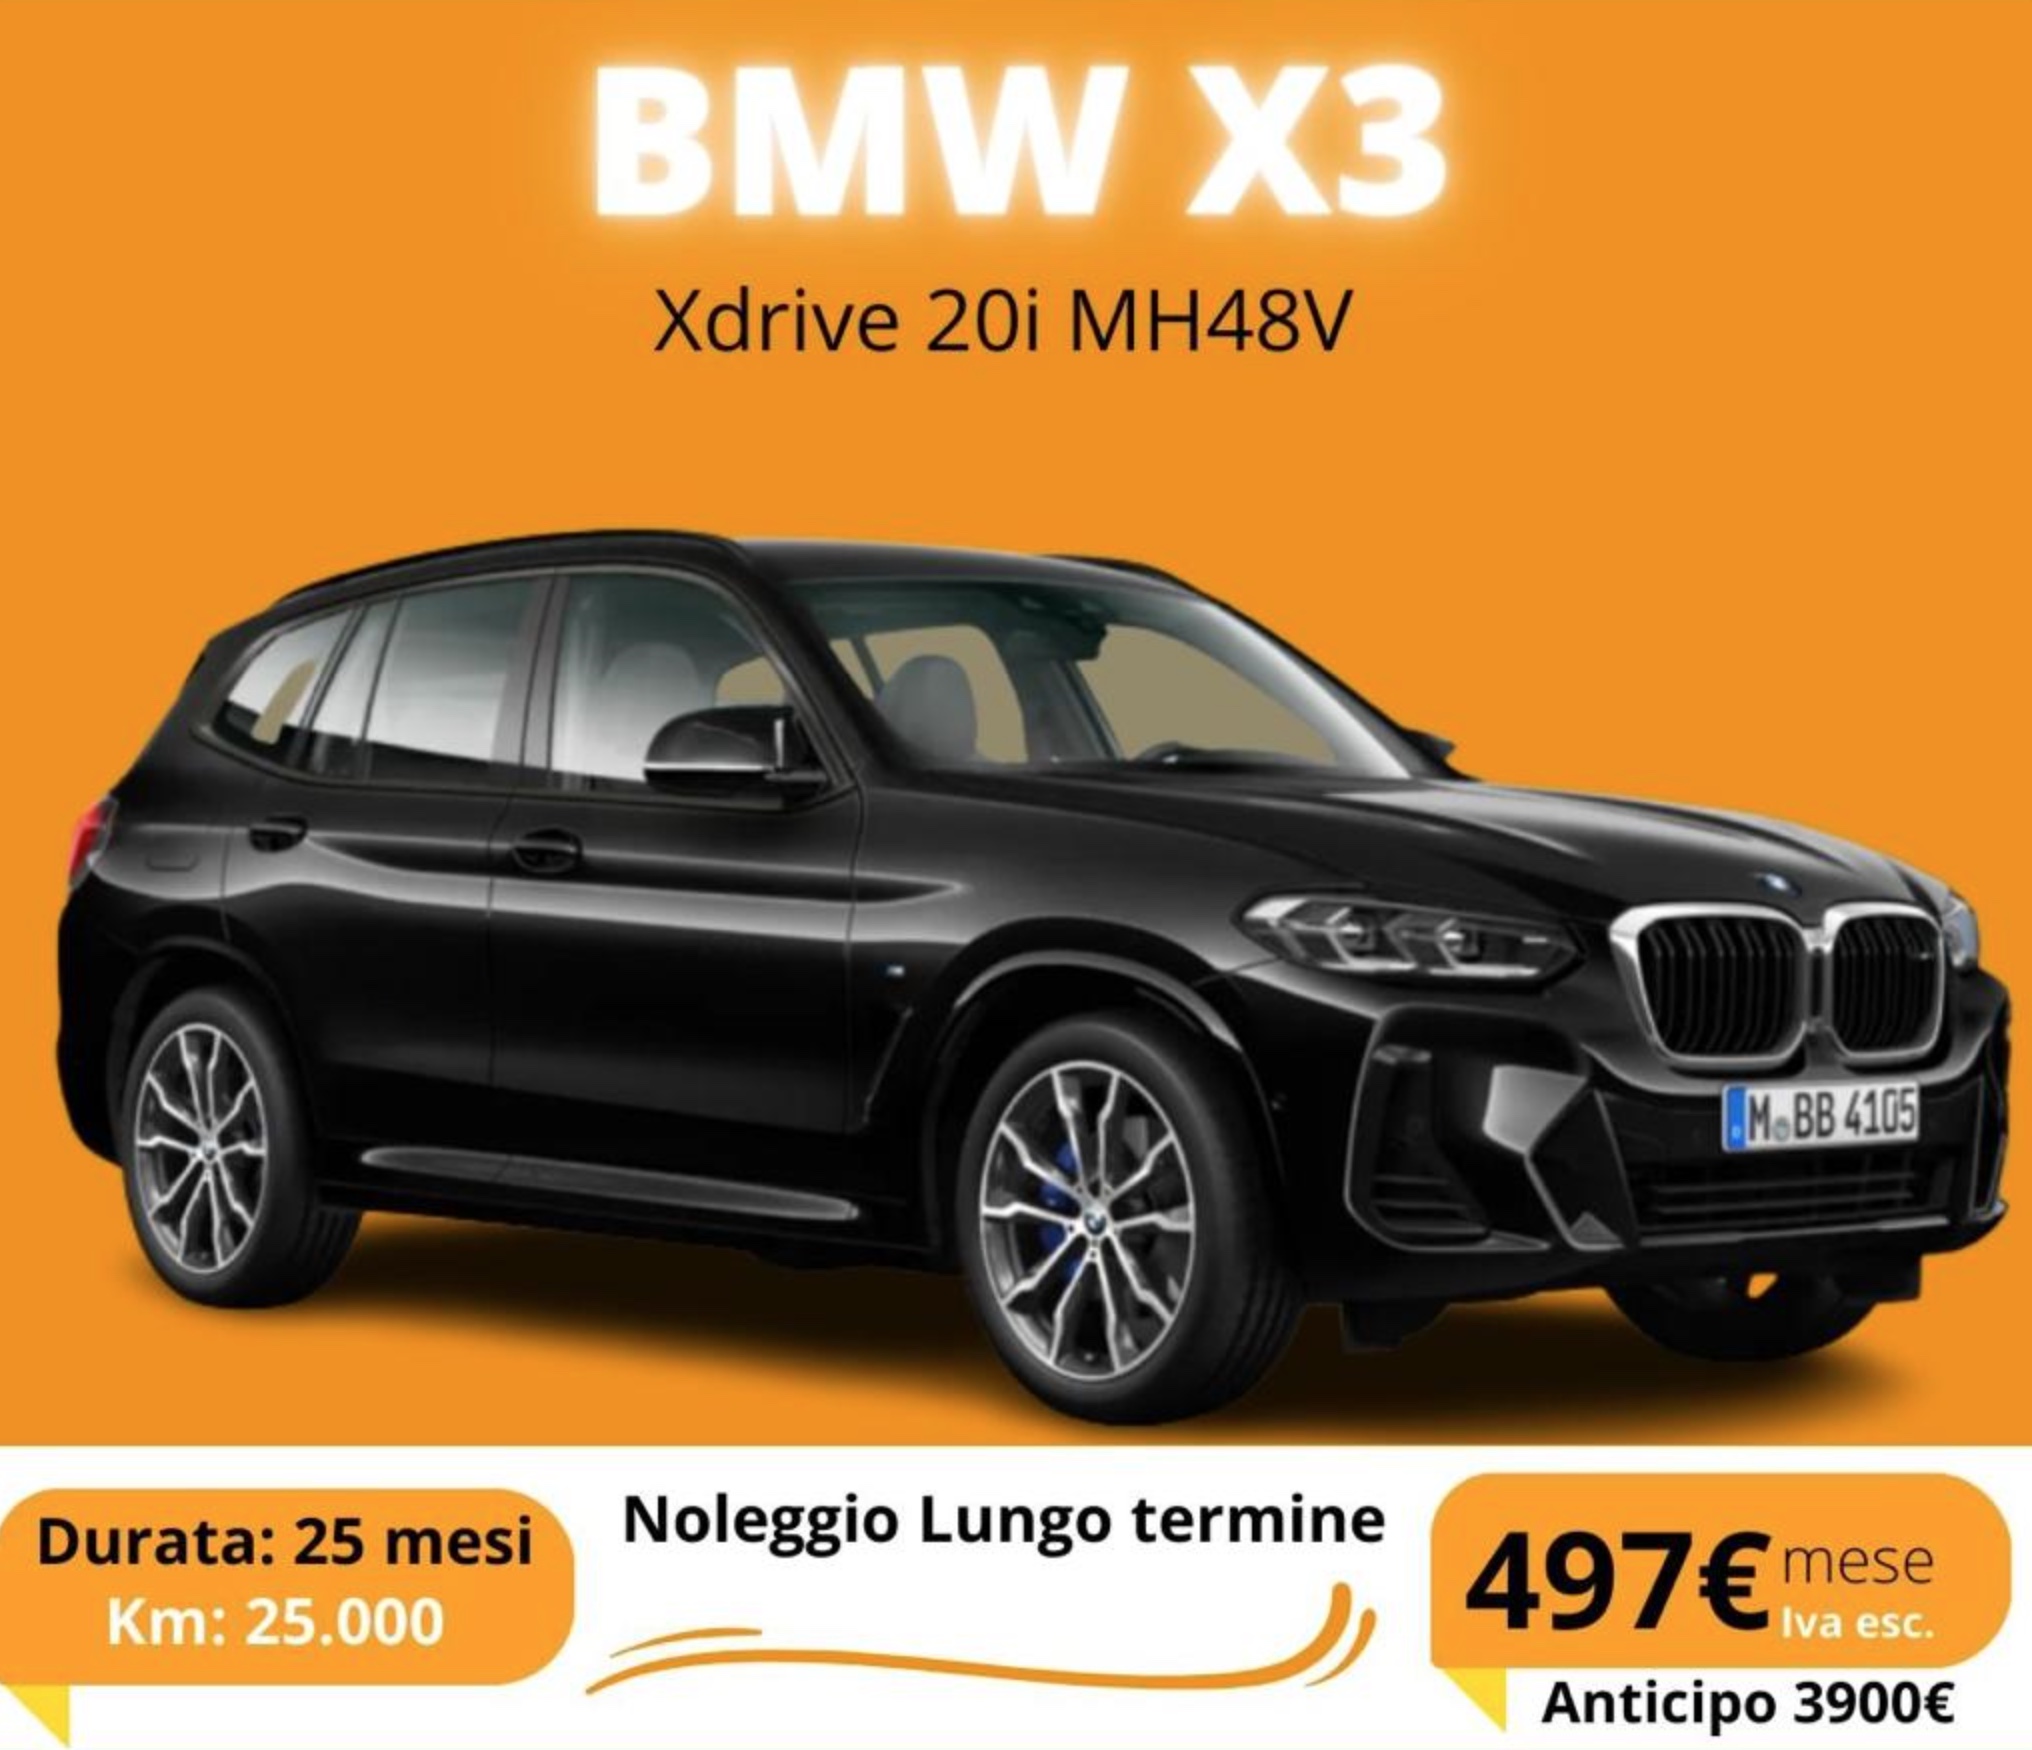 BMW X3 noleggio lungo termine